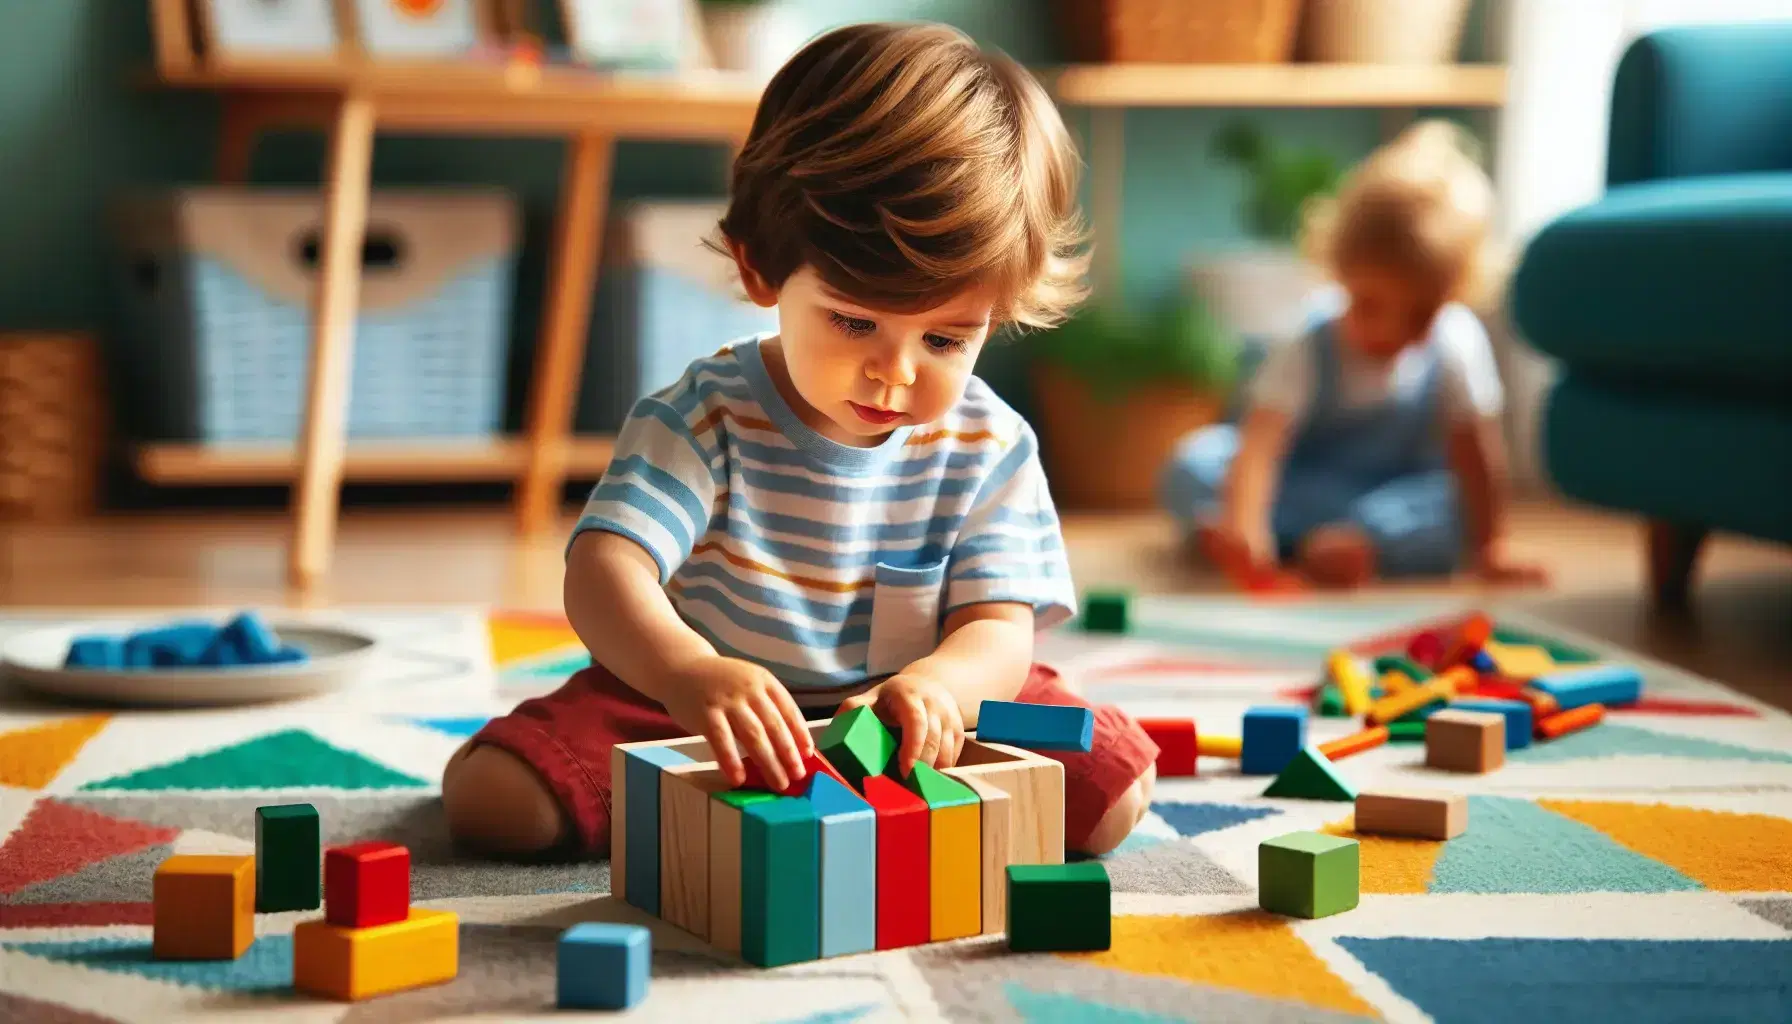 Bambino piccolo intento a incastrare blocchi di legno colorati su tappeto multicolore, con altro bimbo che disegna sullo sfondo.